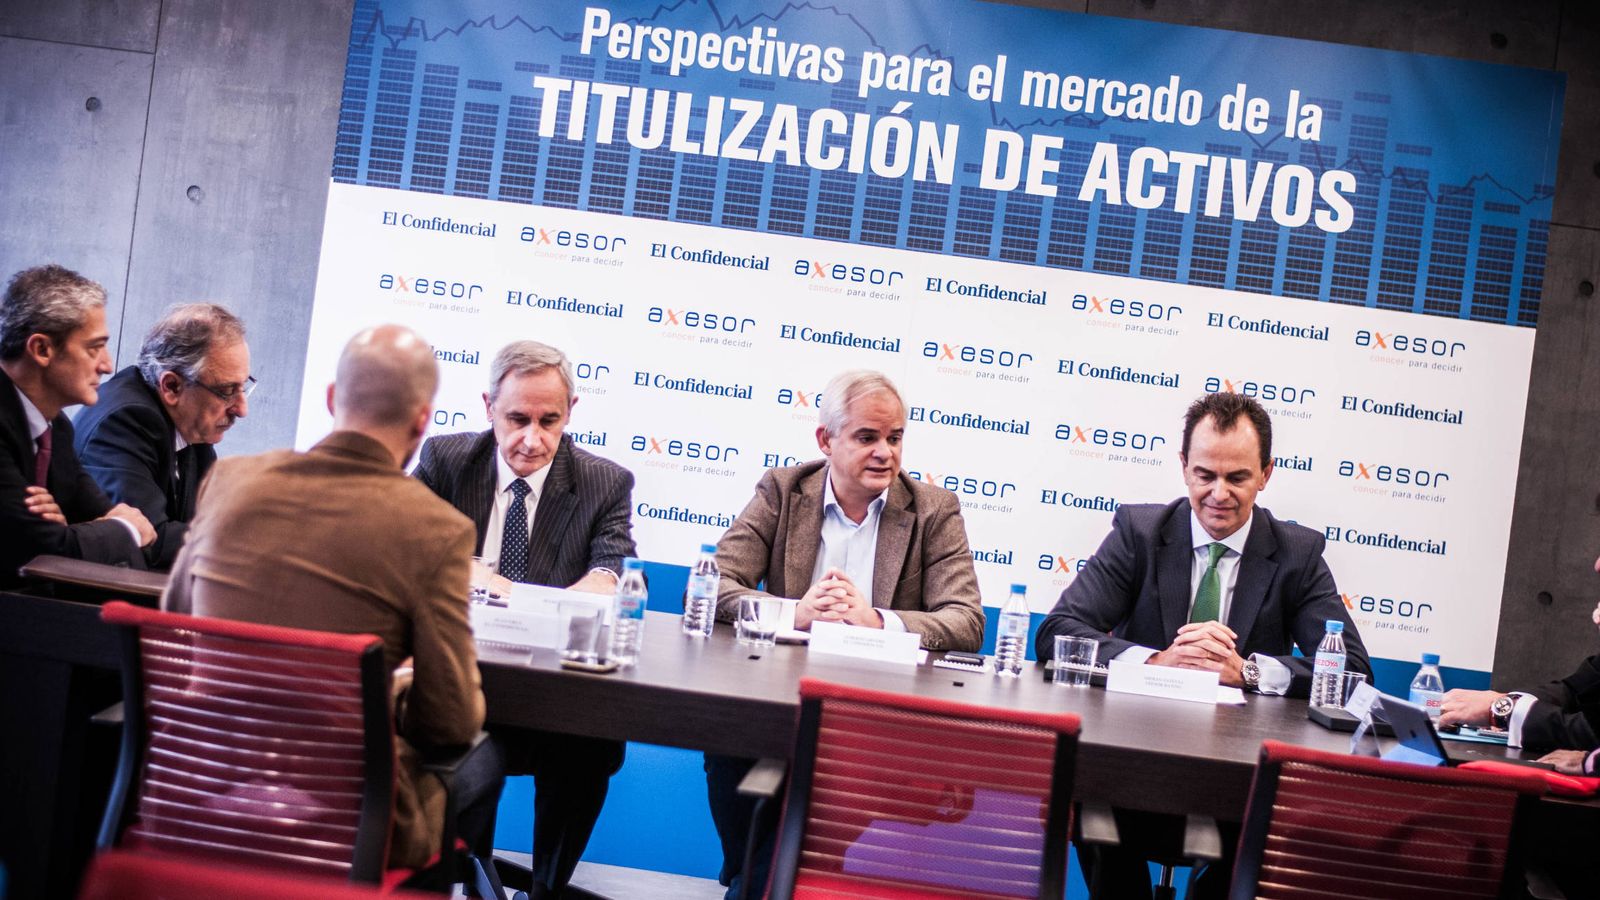 Foto: Mesa organizada por El Confidencial y Axesor 'Perspectivas para el mercado de la titulación de activos'.